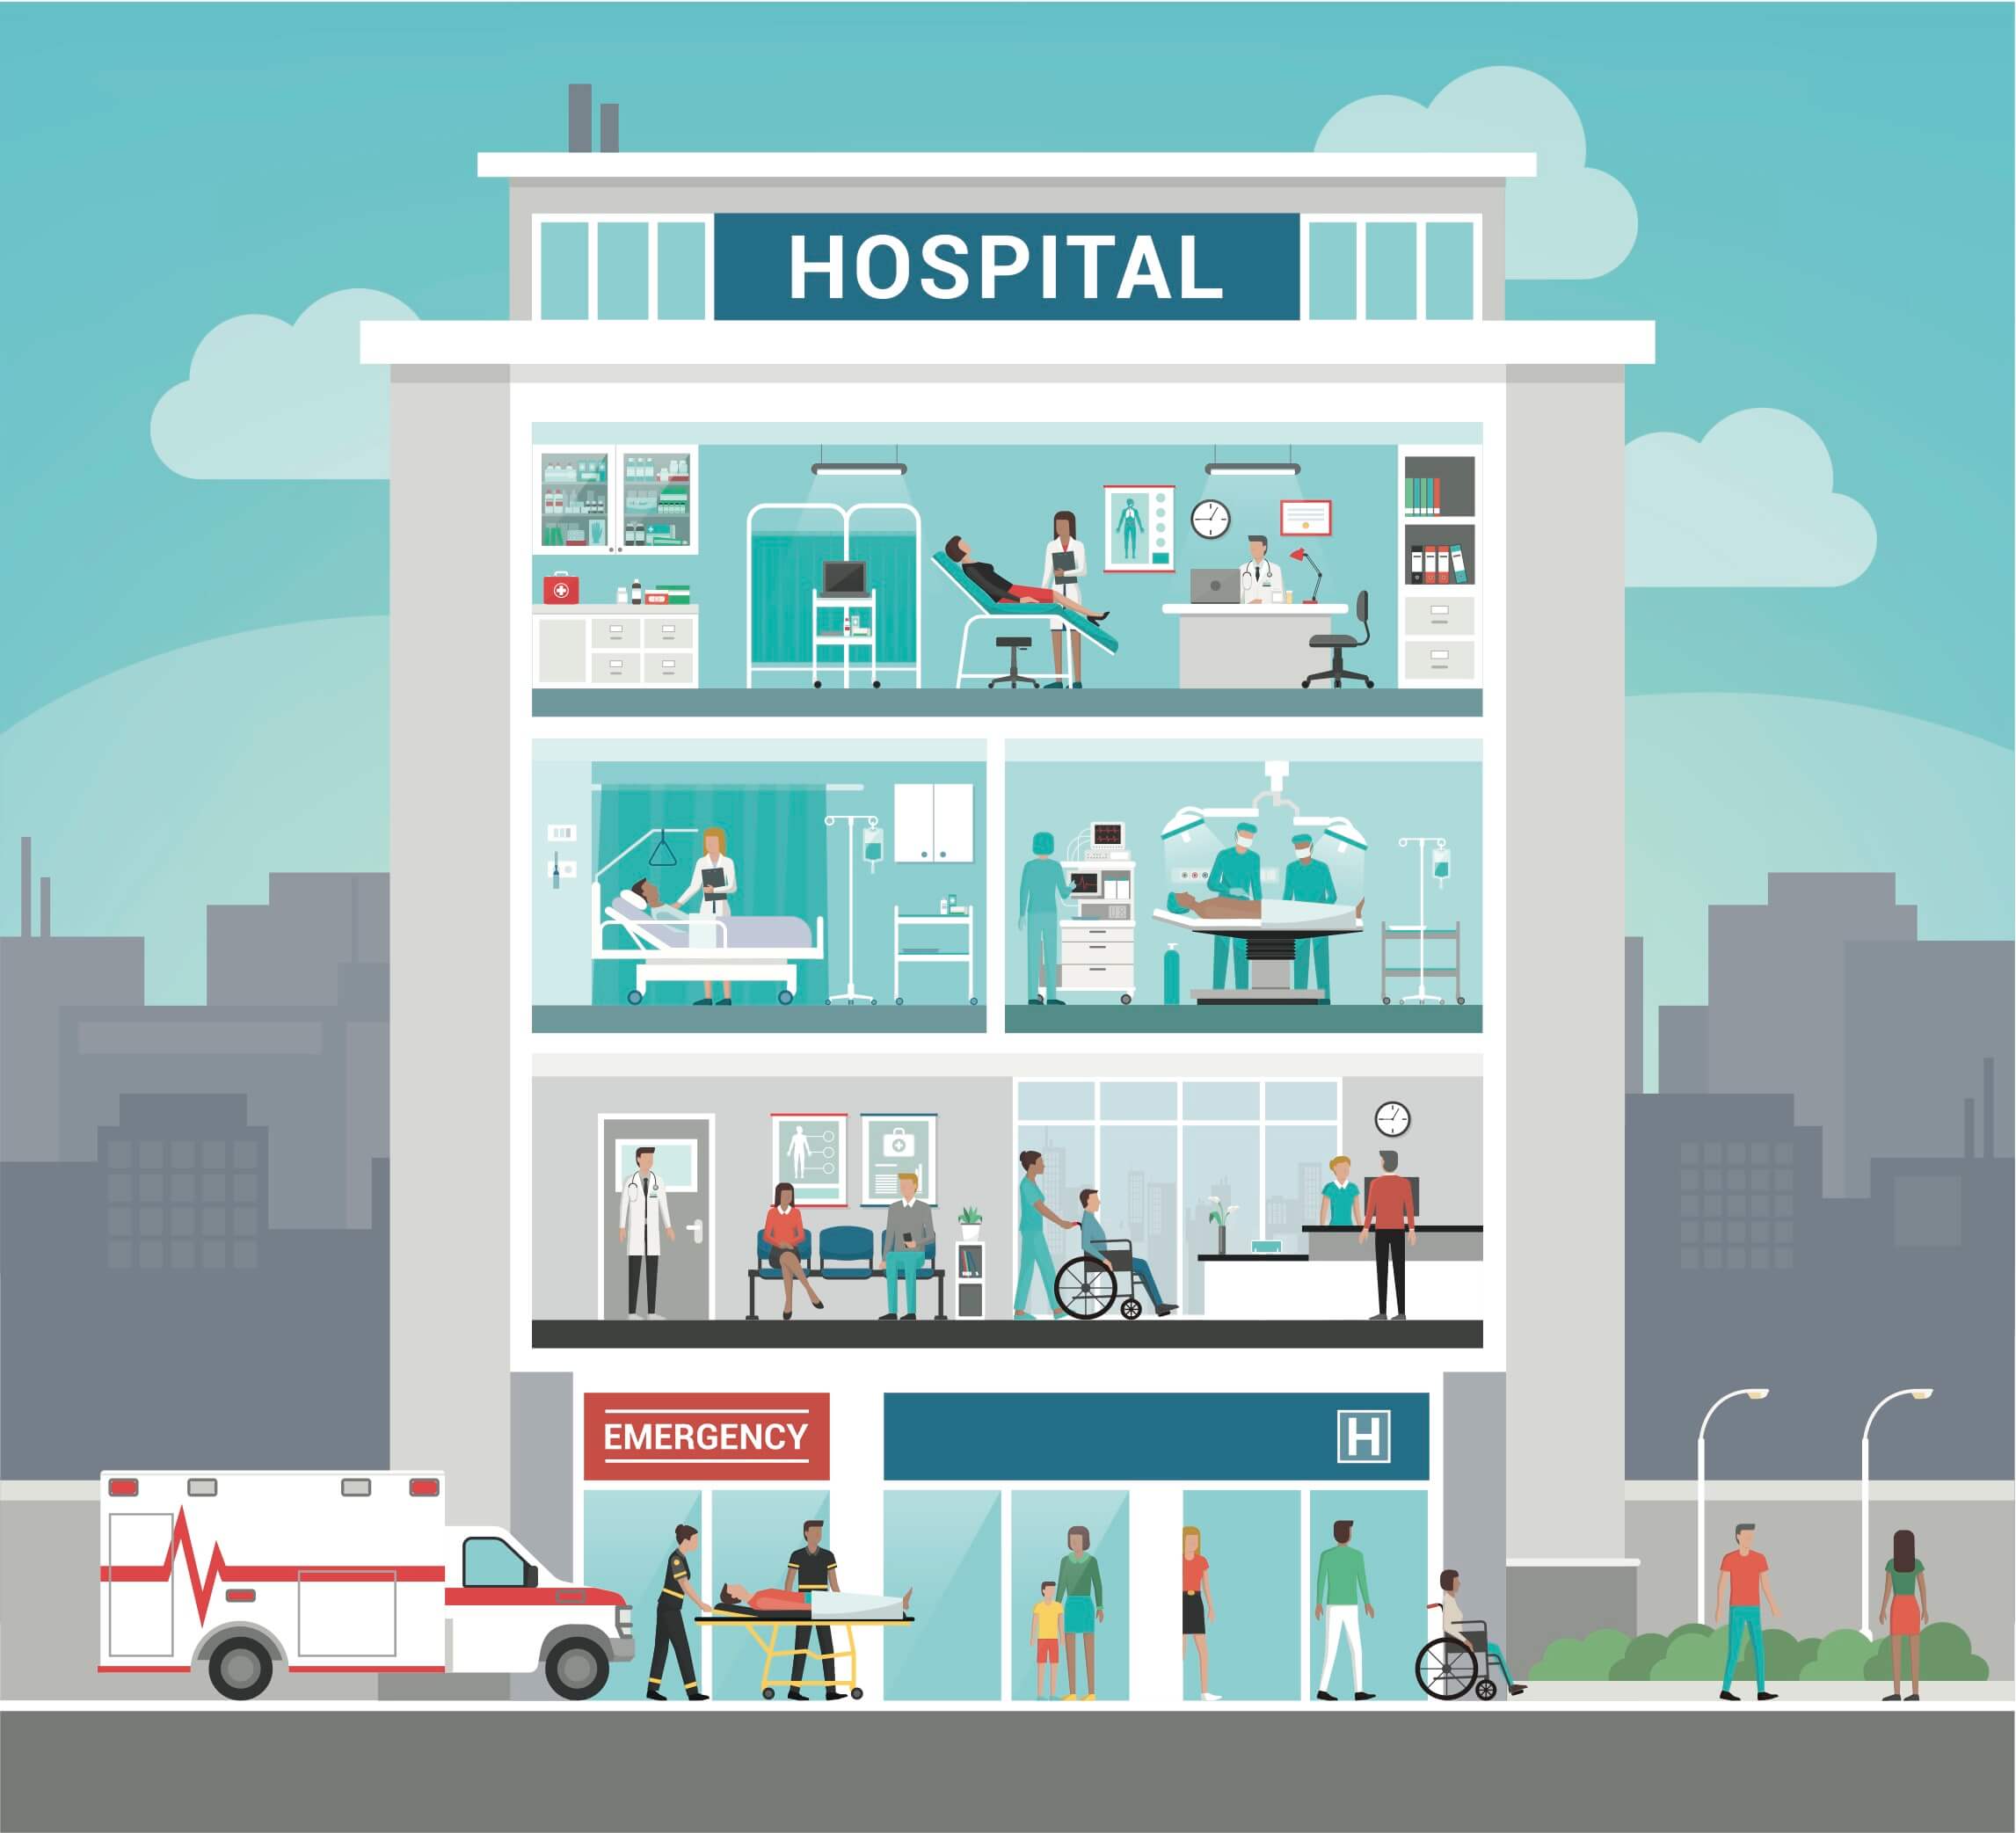 Компания Happycare предлагает новое больничное решение!